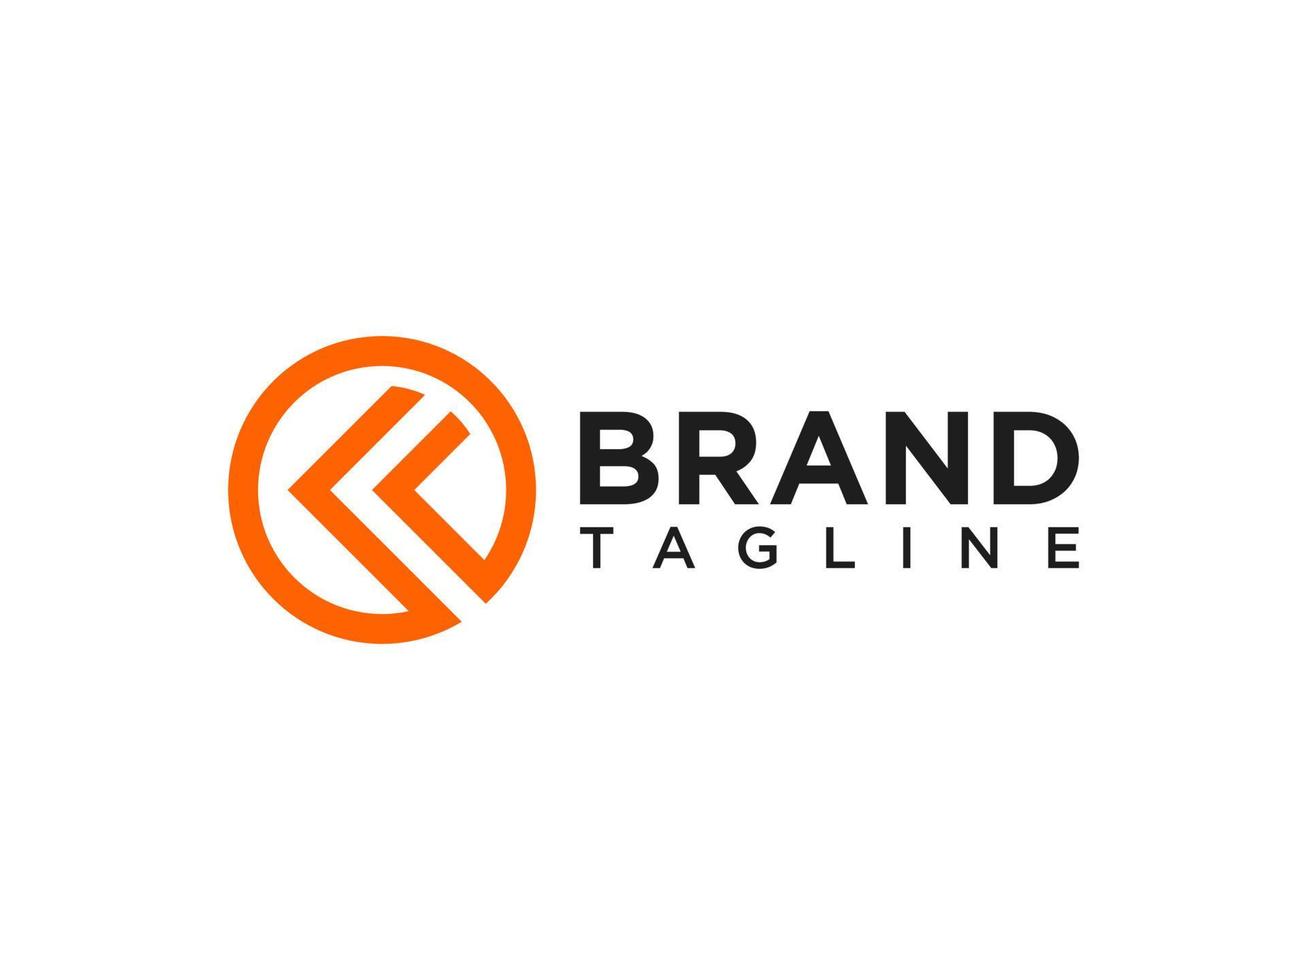 Anfangsbuchstabe k-Logo. orange quadratische Form isoliert auf weißem Hintergrund. verwendbar für Geschäfts- und Markenlogos. flaches Vektor-Logo-Design-Vorlagenelement. vektor